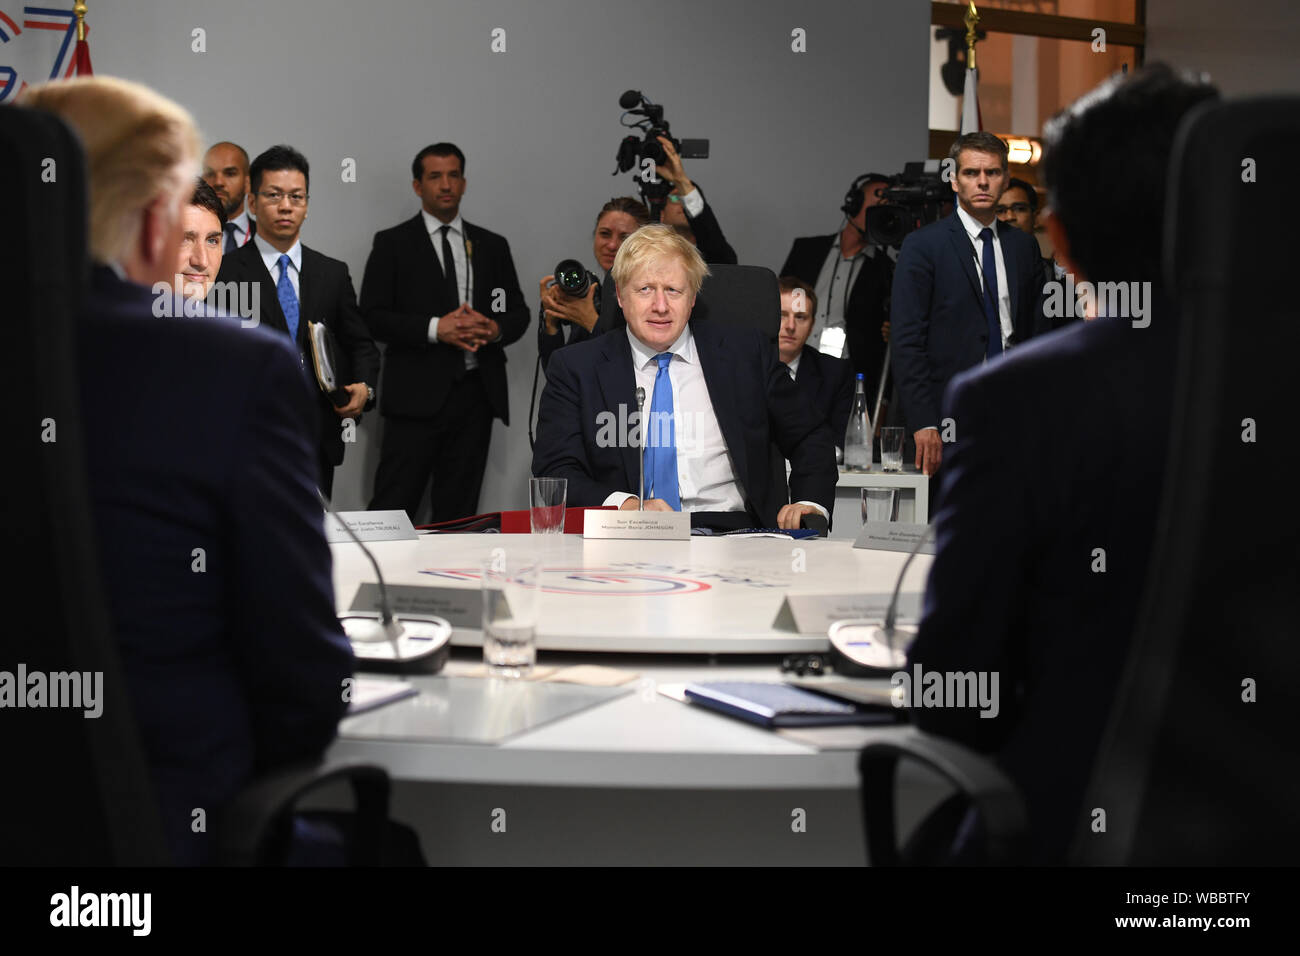 Il primo ministro Boris Johnson durante una sessione di lavoro in materia di politica estera e gli affari di sicurezza: Siria, come parte del vertice G7 di Biarritz, Francia. Foto Stock